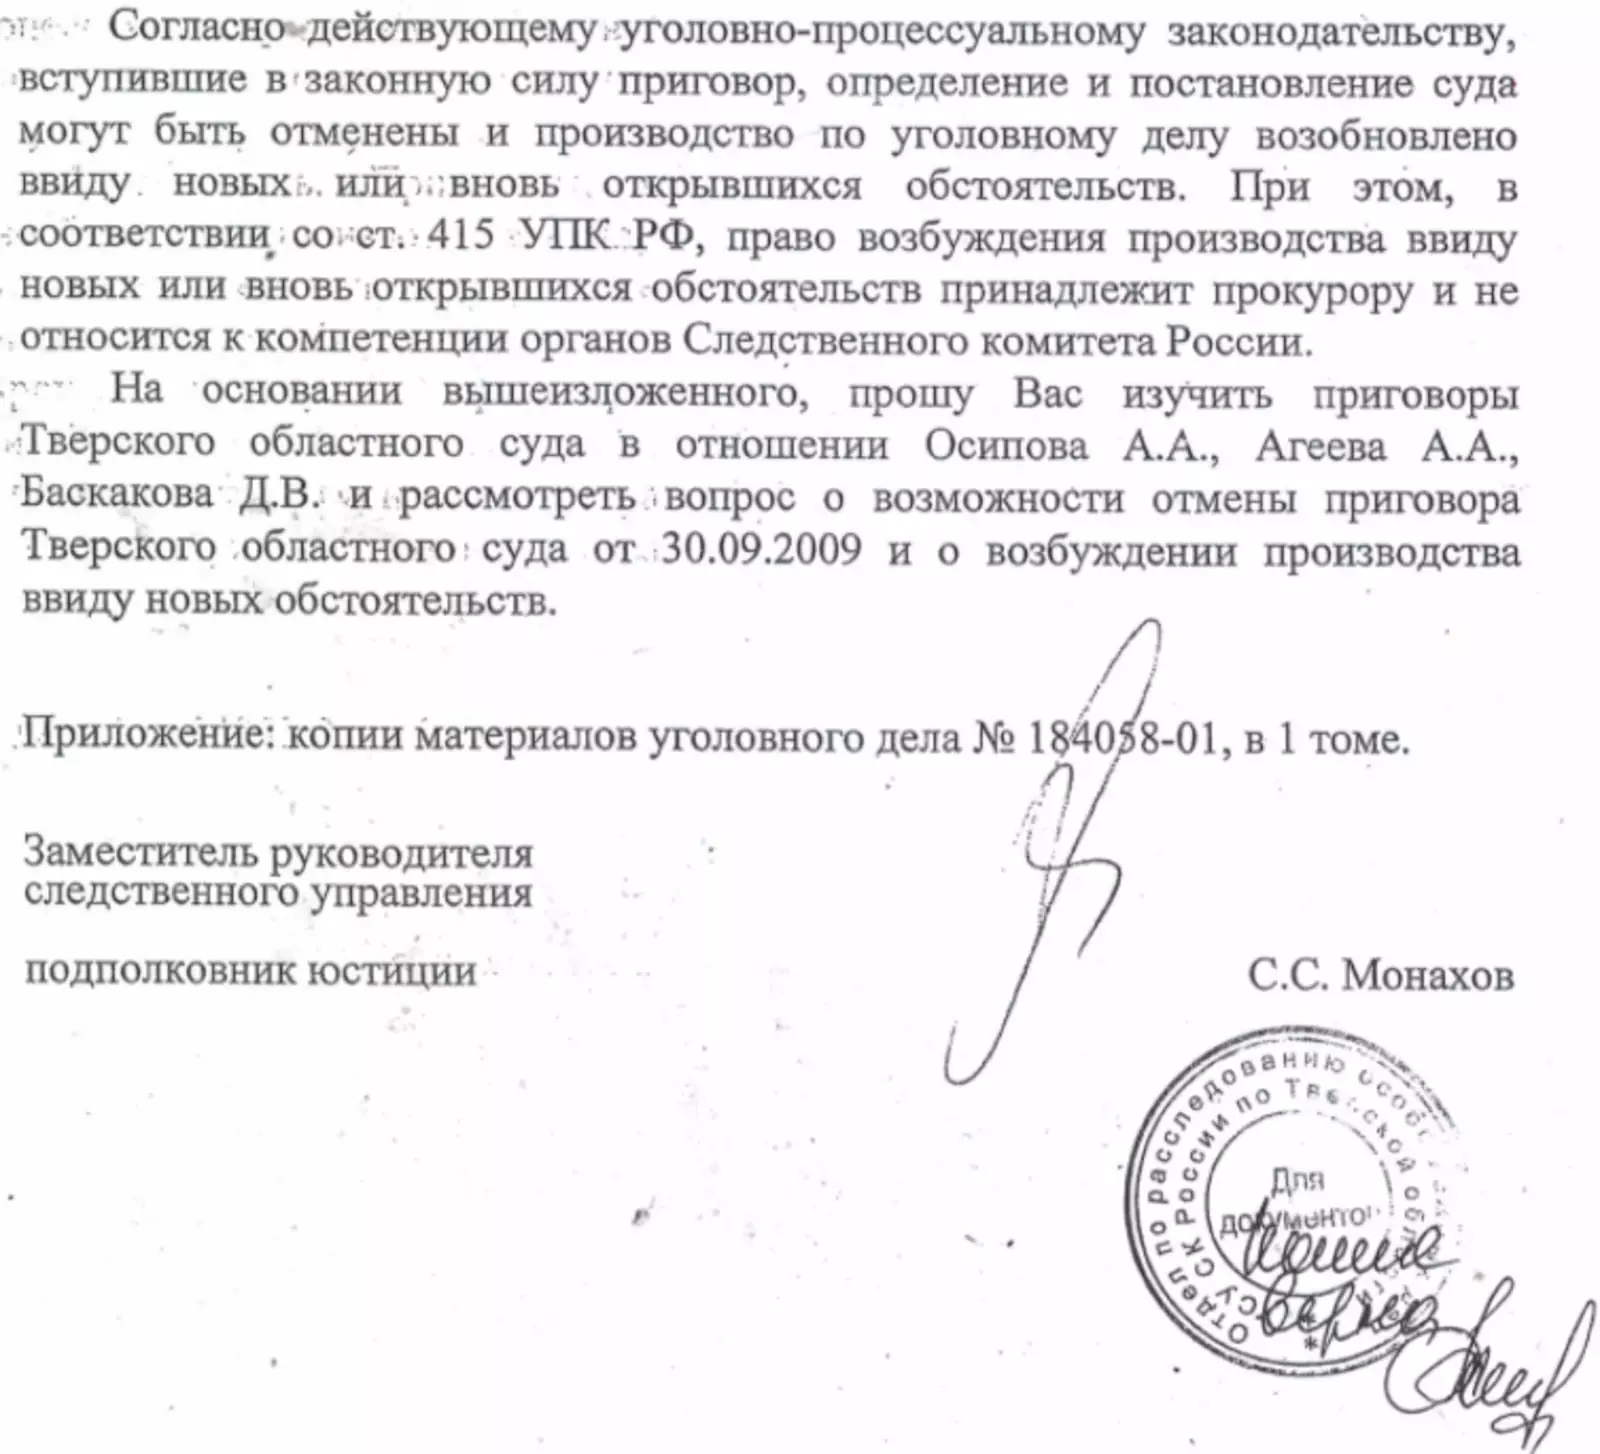 Фрагмент обращения Монахова в прокуратуру.